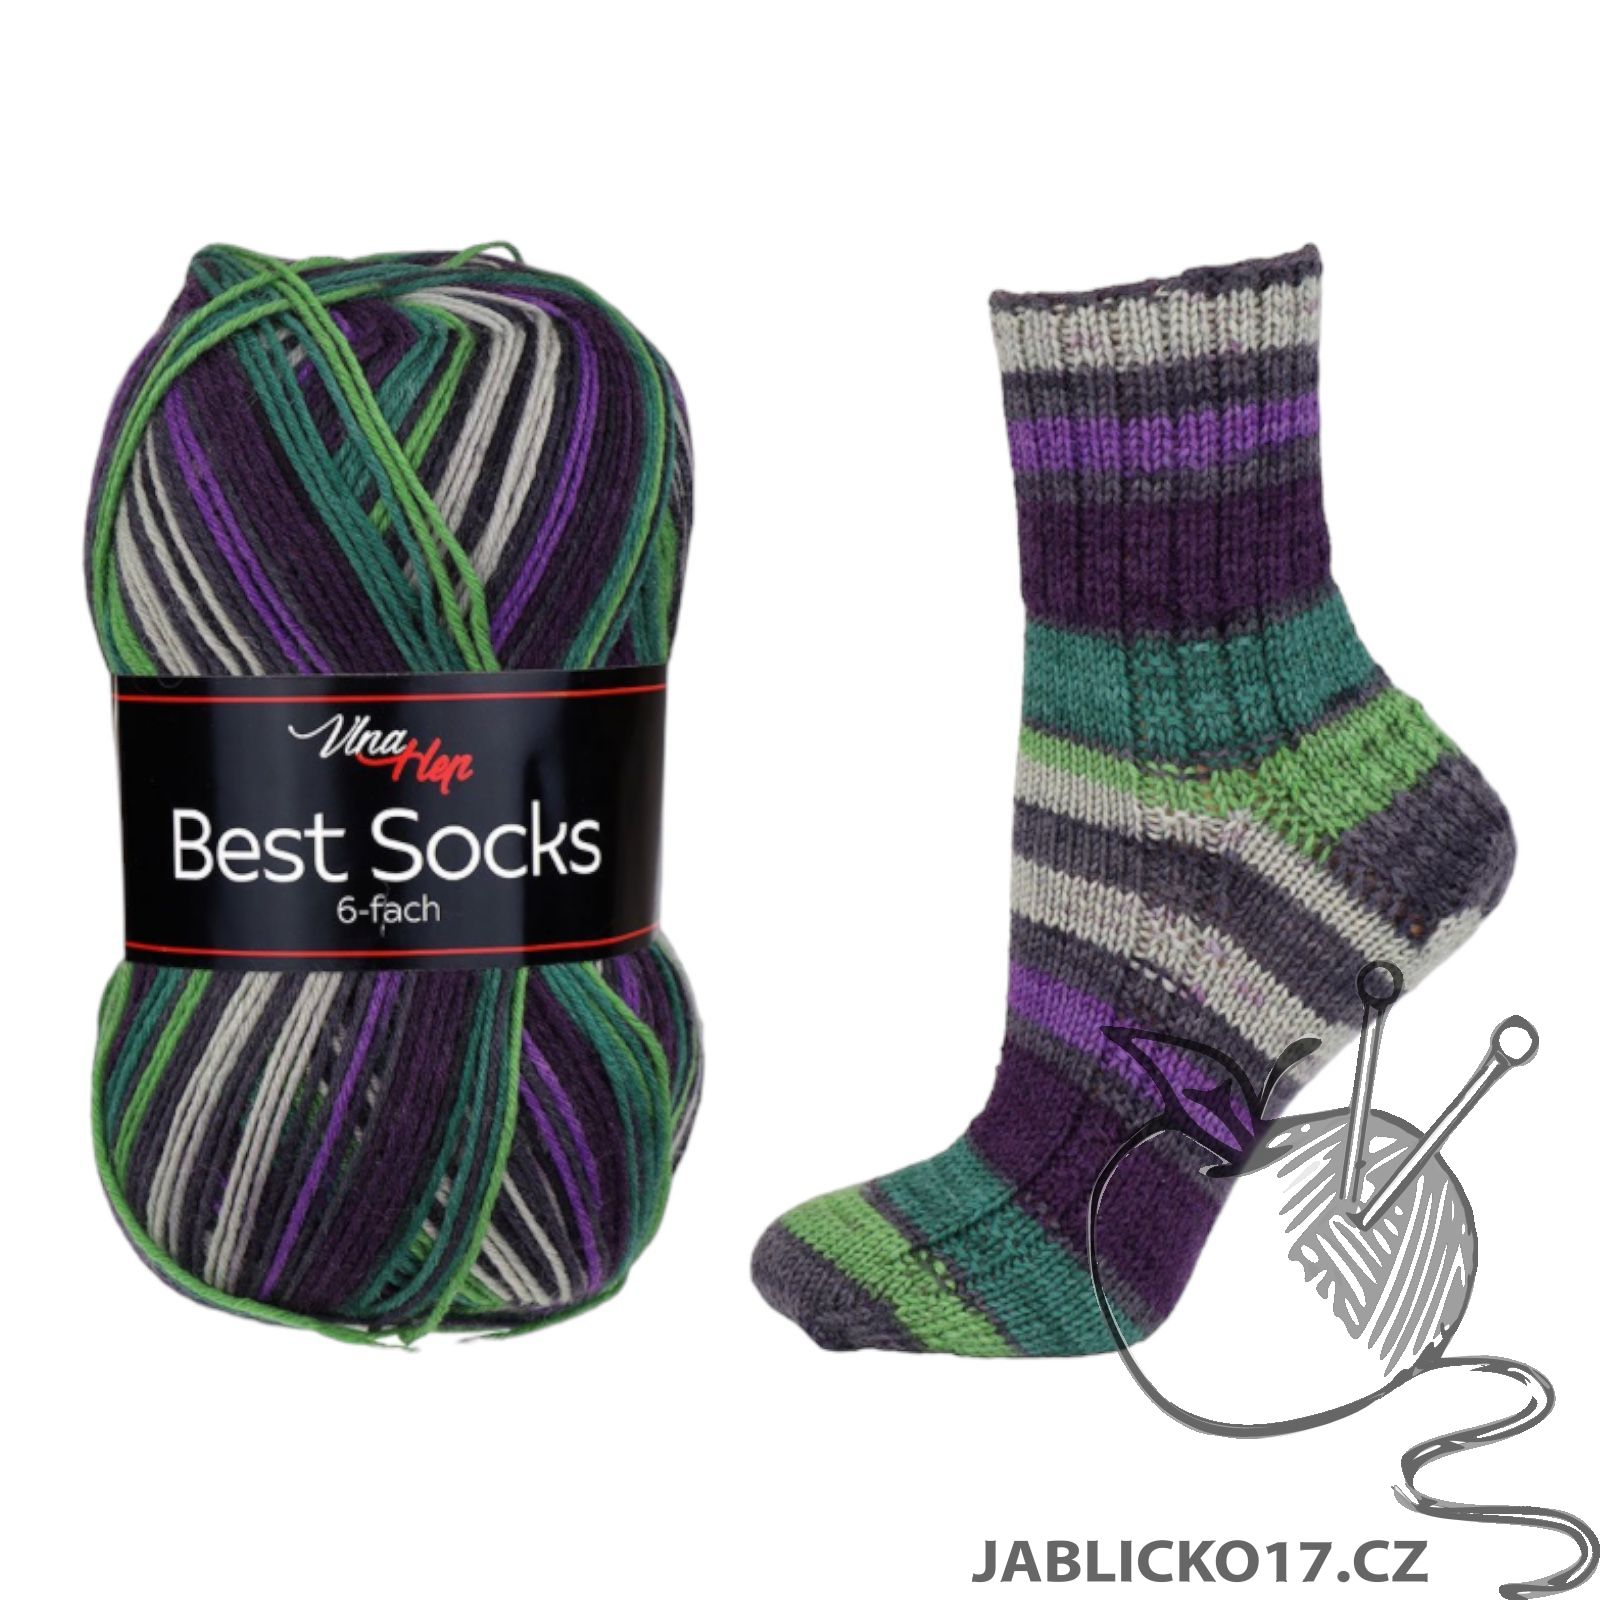 Best Socks 6-fach - Ručně pletené zboží - Galanterie Koryčany a Vyškov